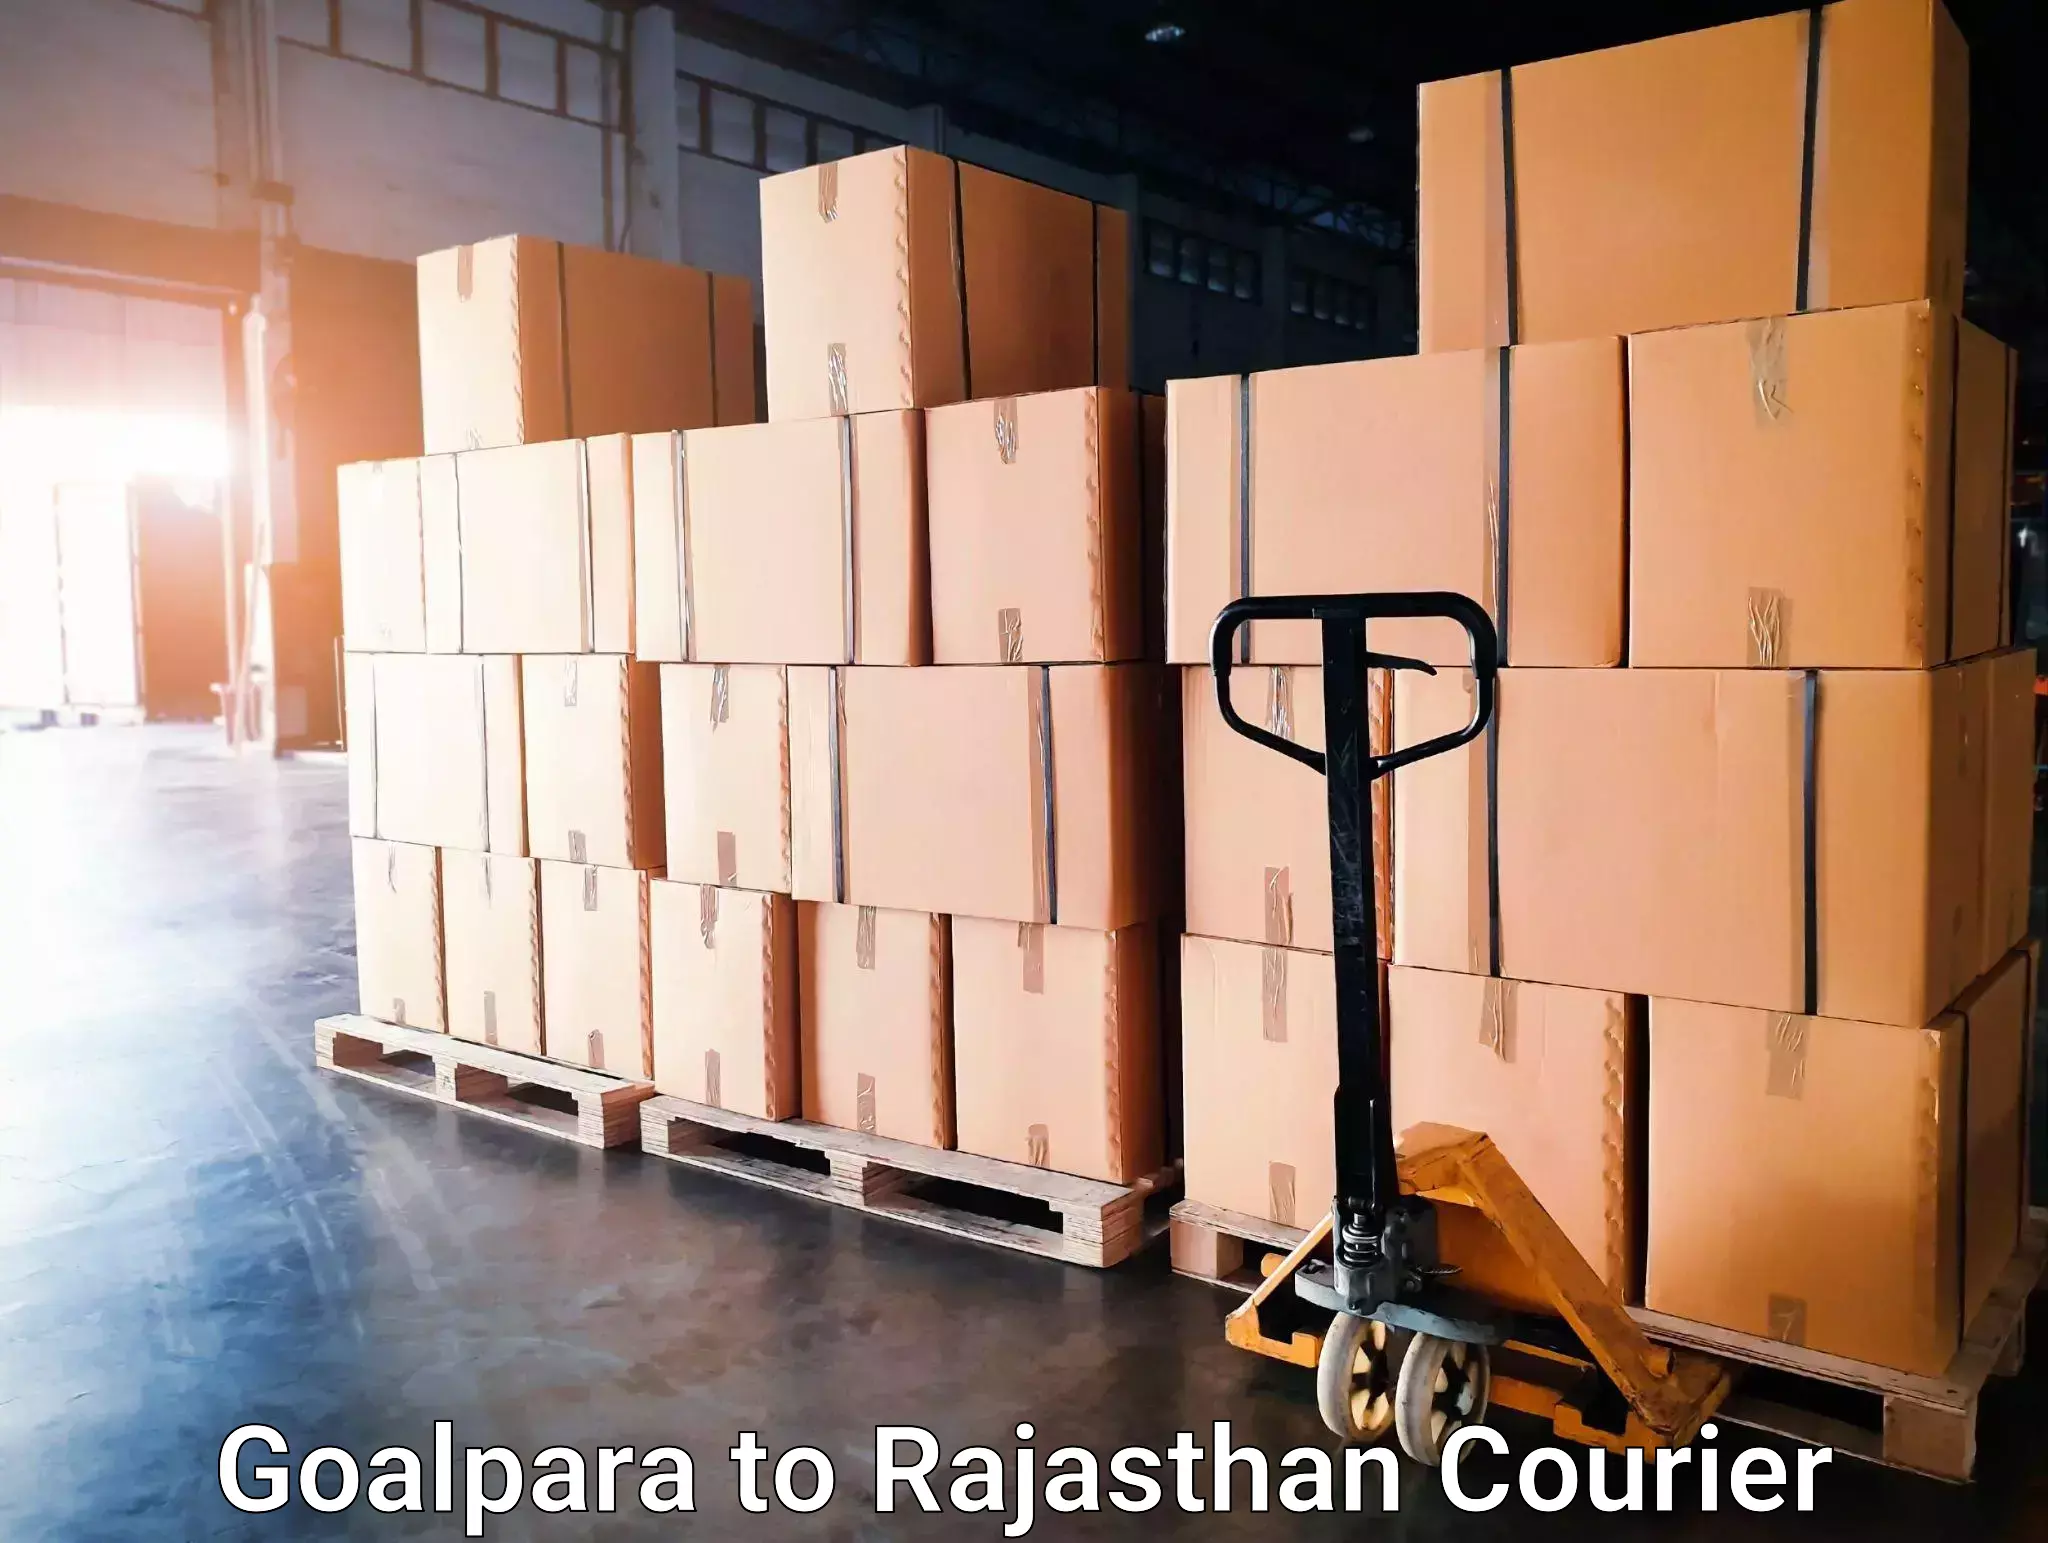 High-speed parcel service Goalpara to Bikaner